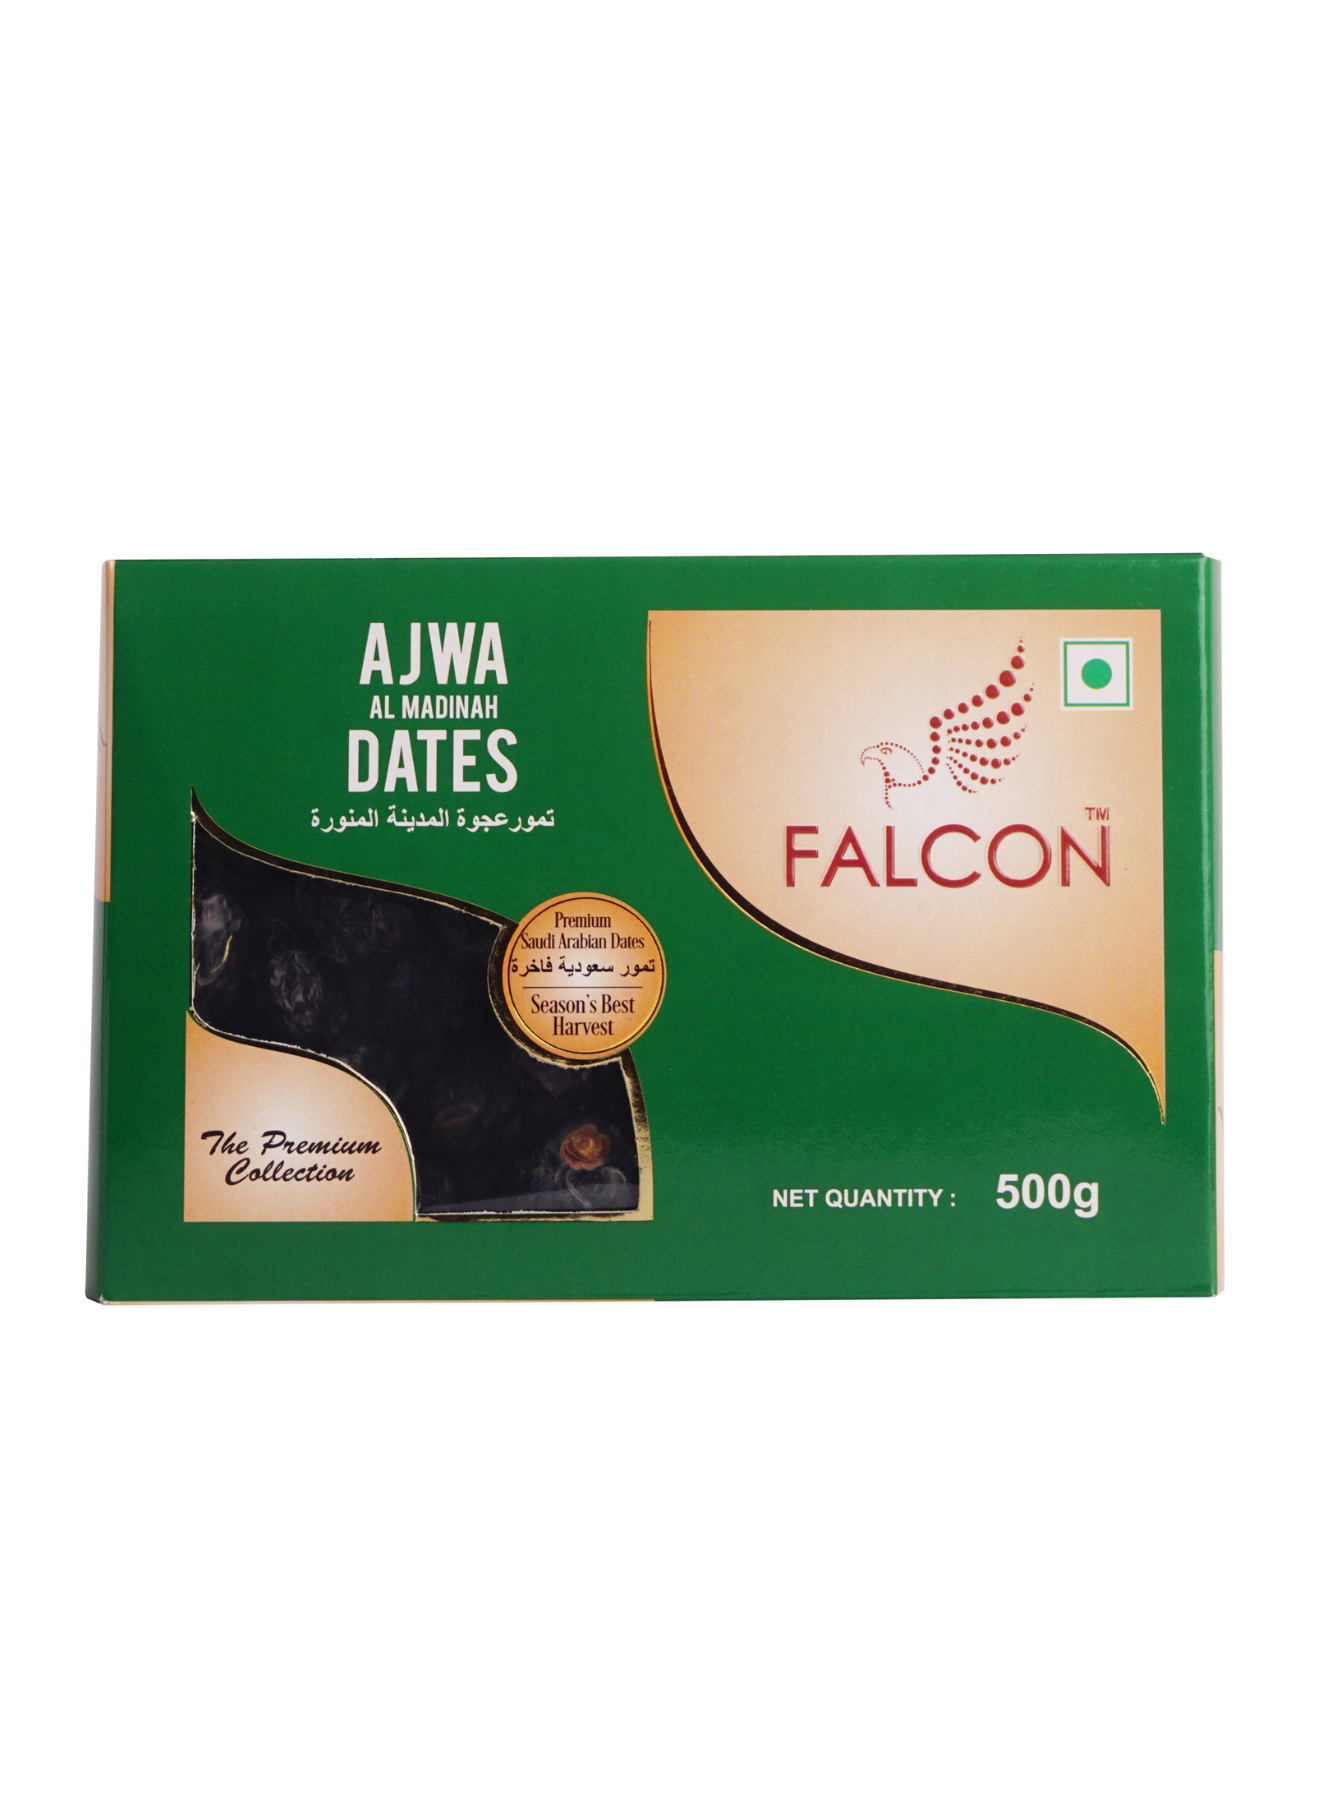 Falcon Ajwa Dates Box- 500g